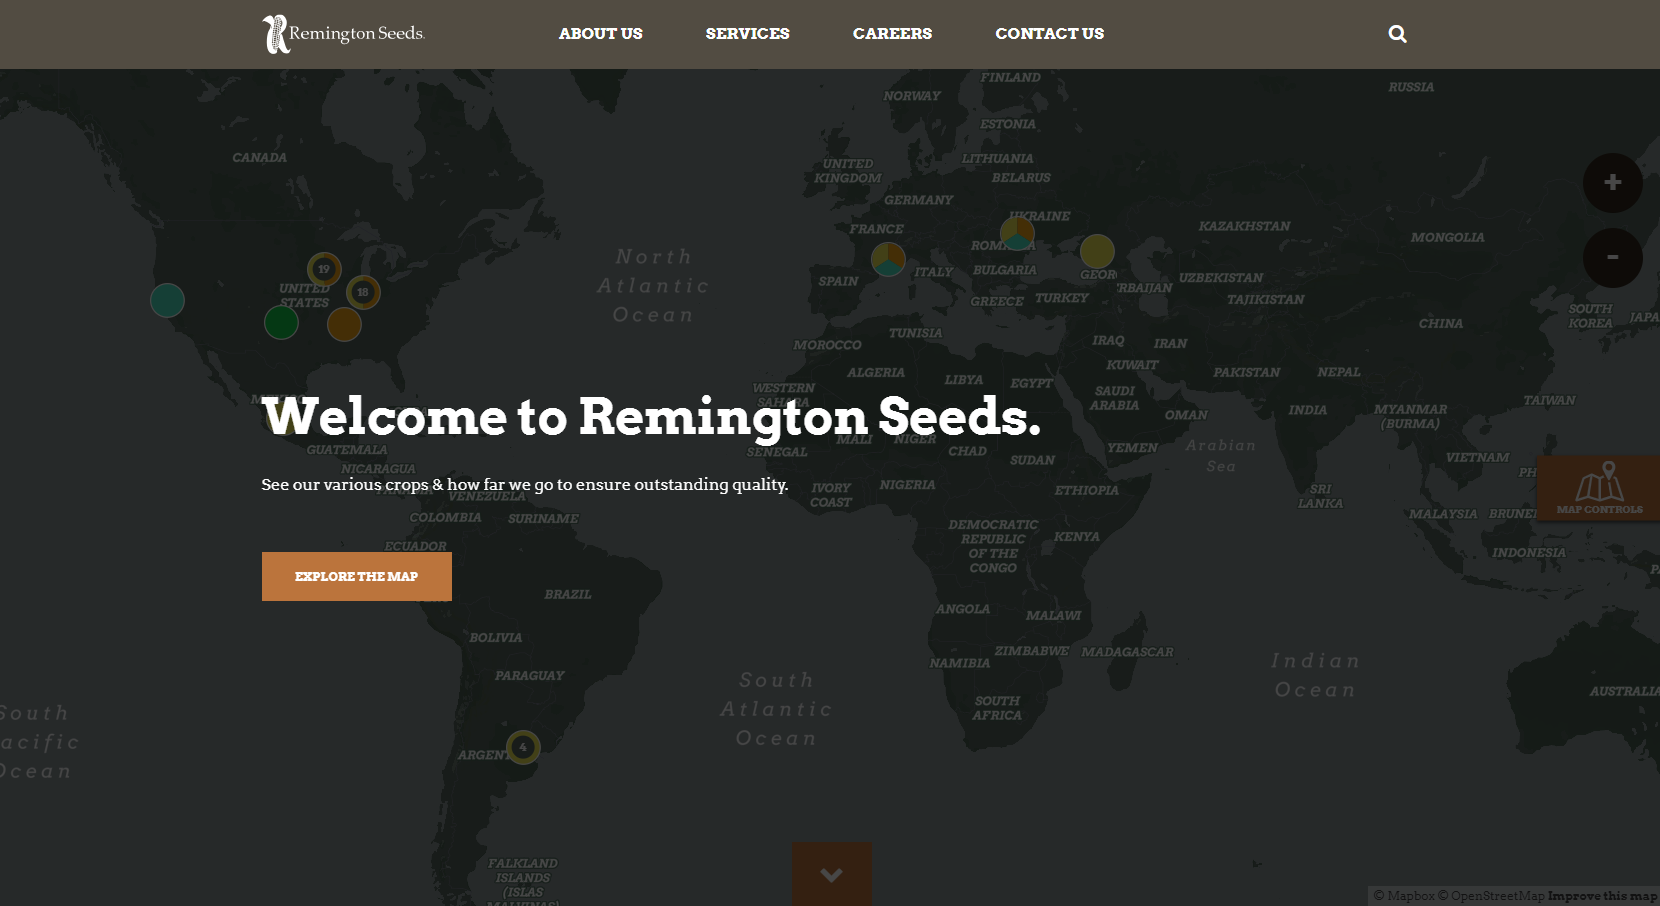 Remington Seeds